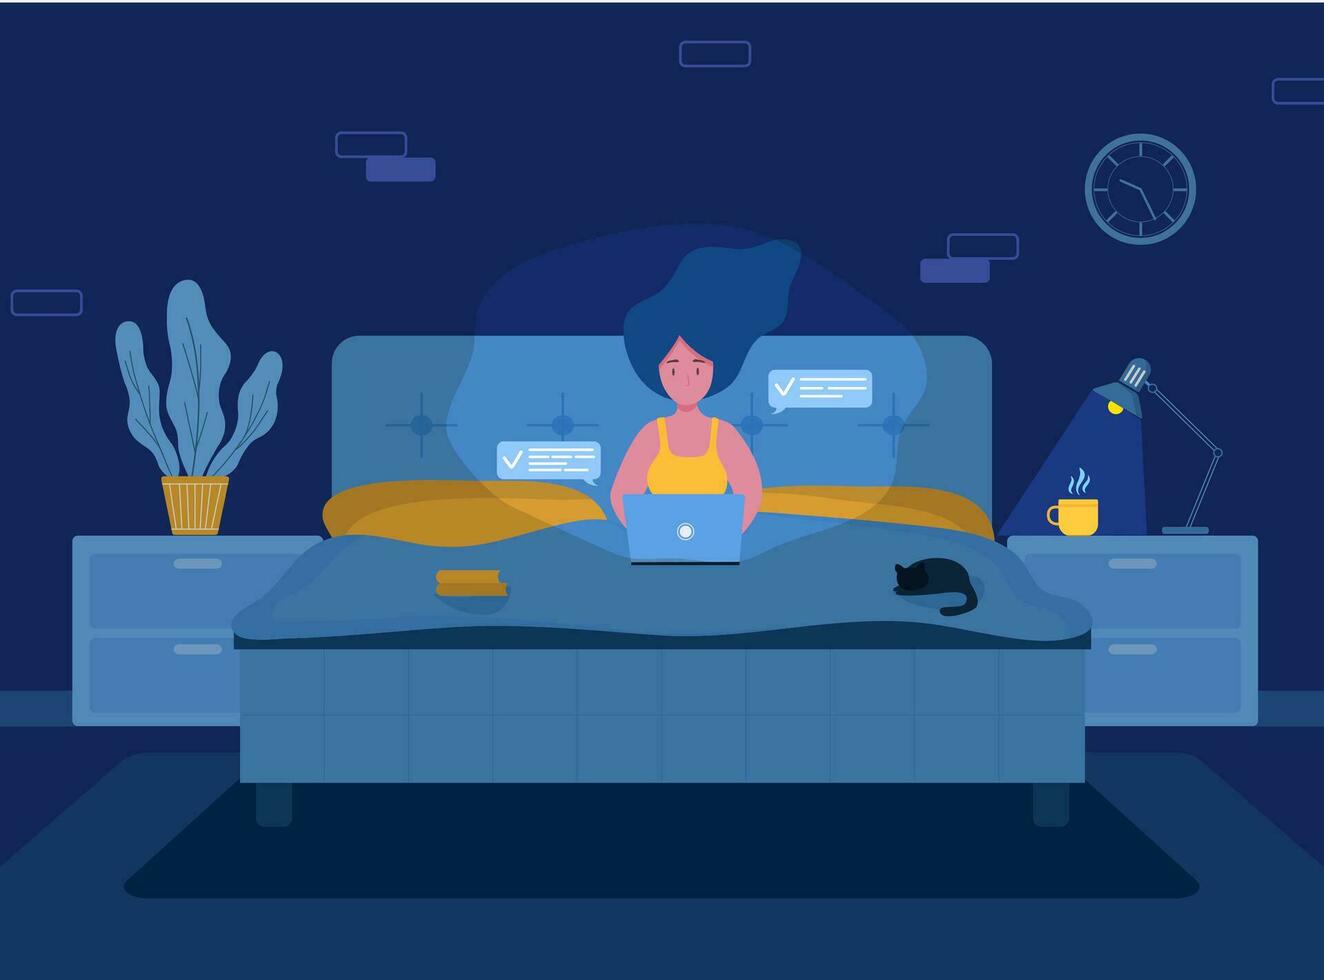 De las mujeres Lanza libre. niña con ordenador portátil en auriculares acostado en el cama. concepto ilustración para laboral, estudiando, educación, trabajo desde hogar, sano estilo de vida. vector ilustración en plano estilo.